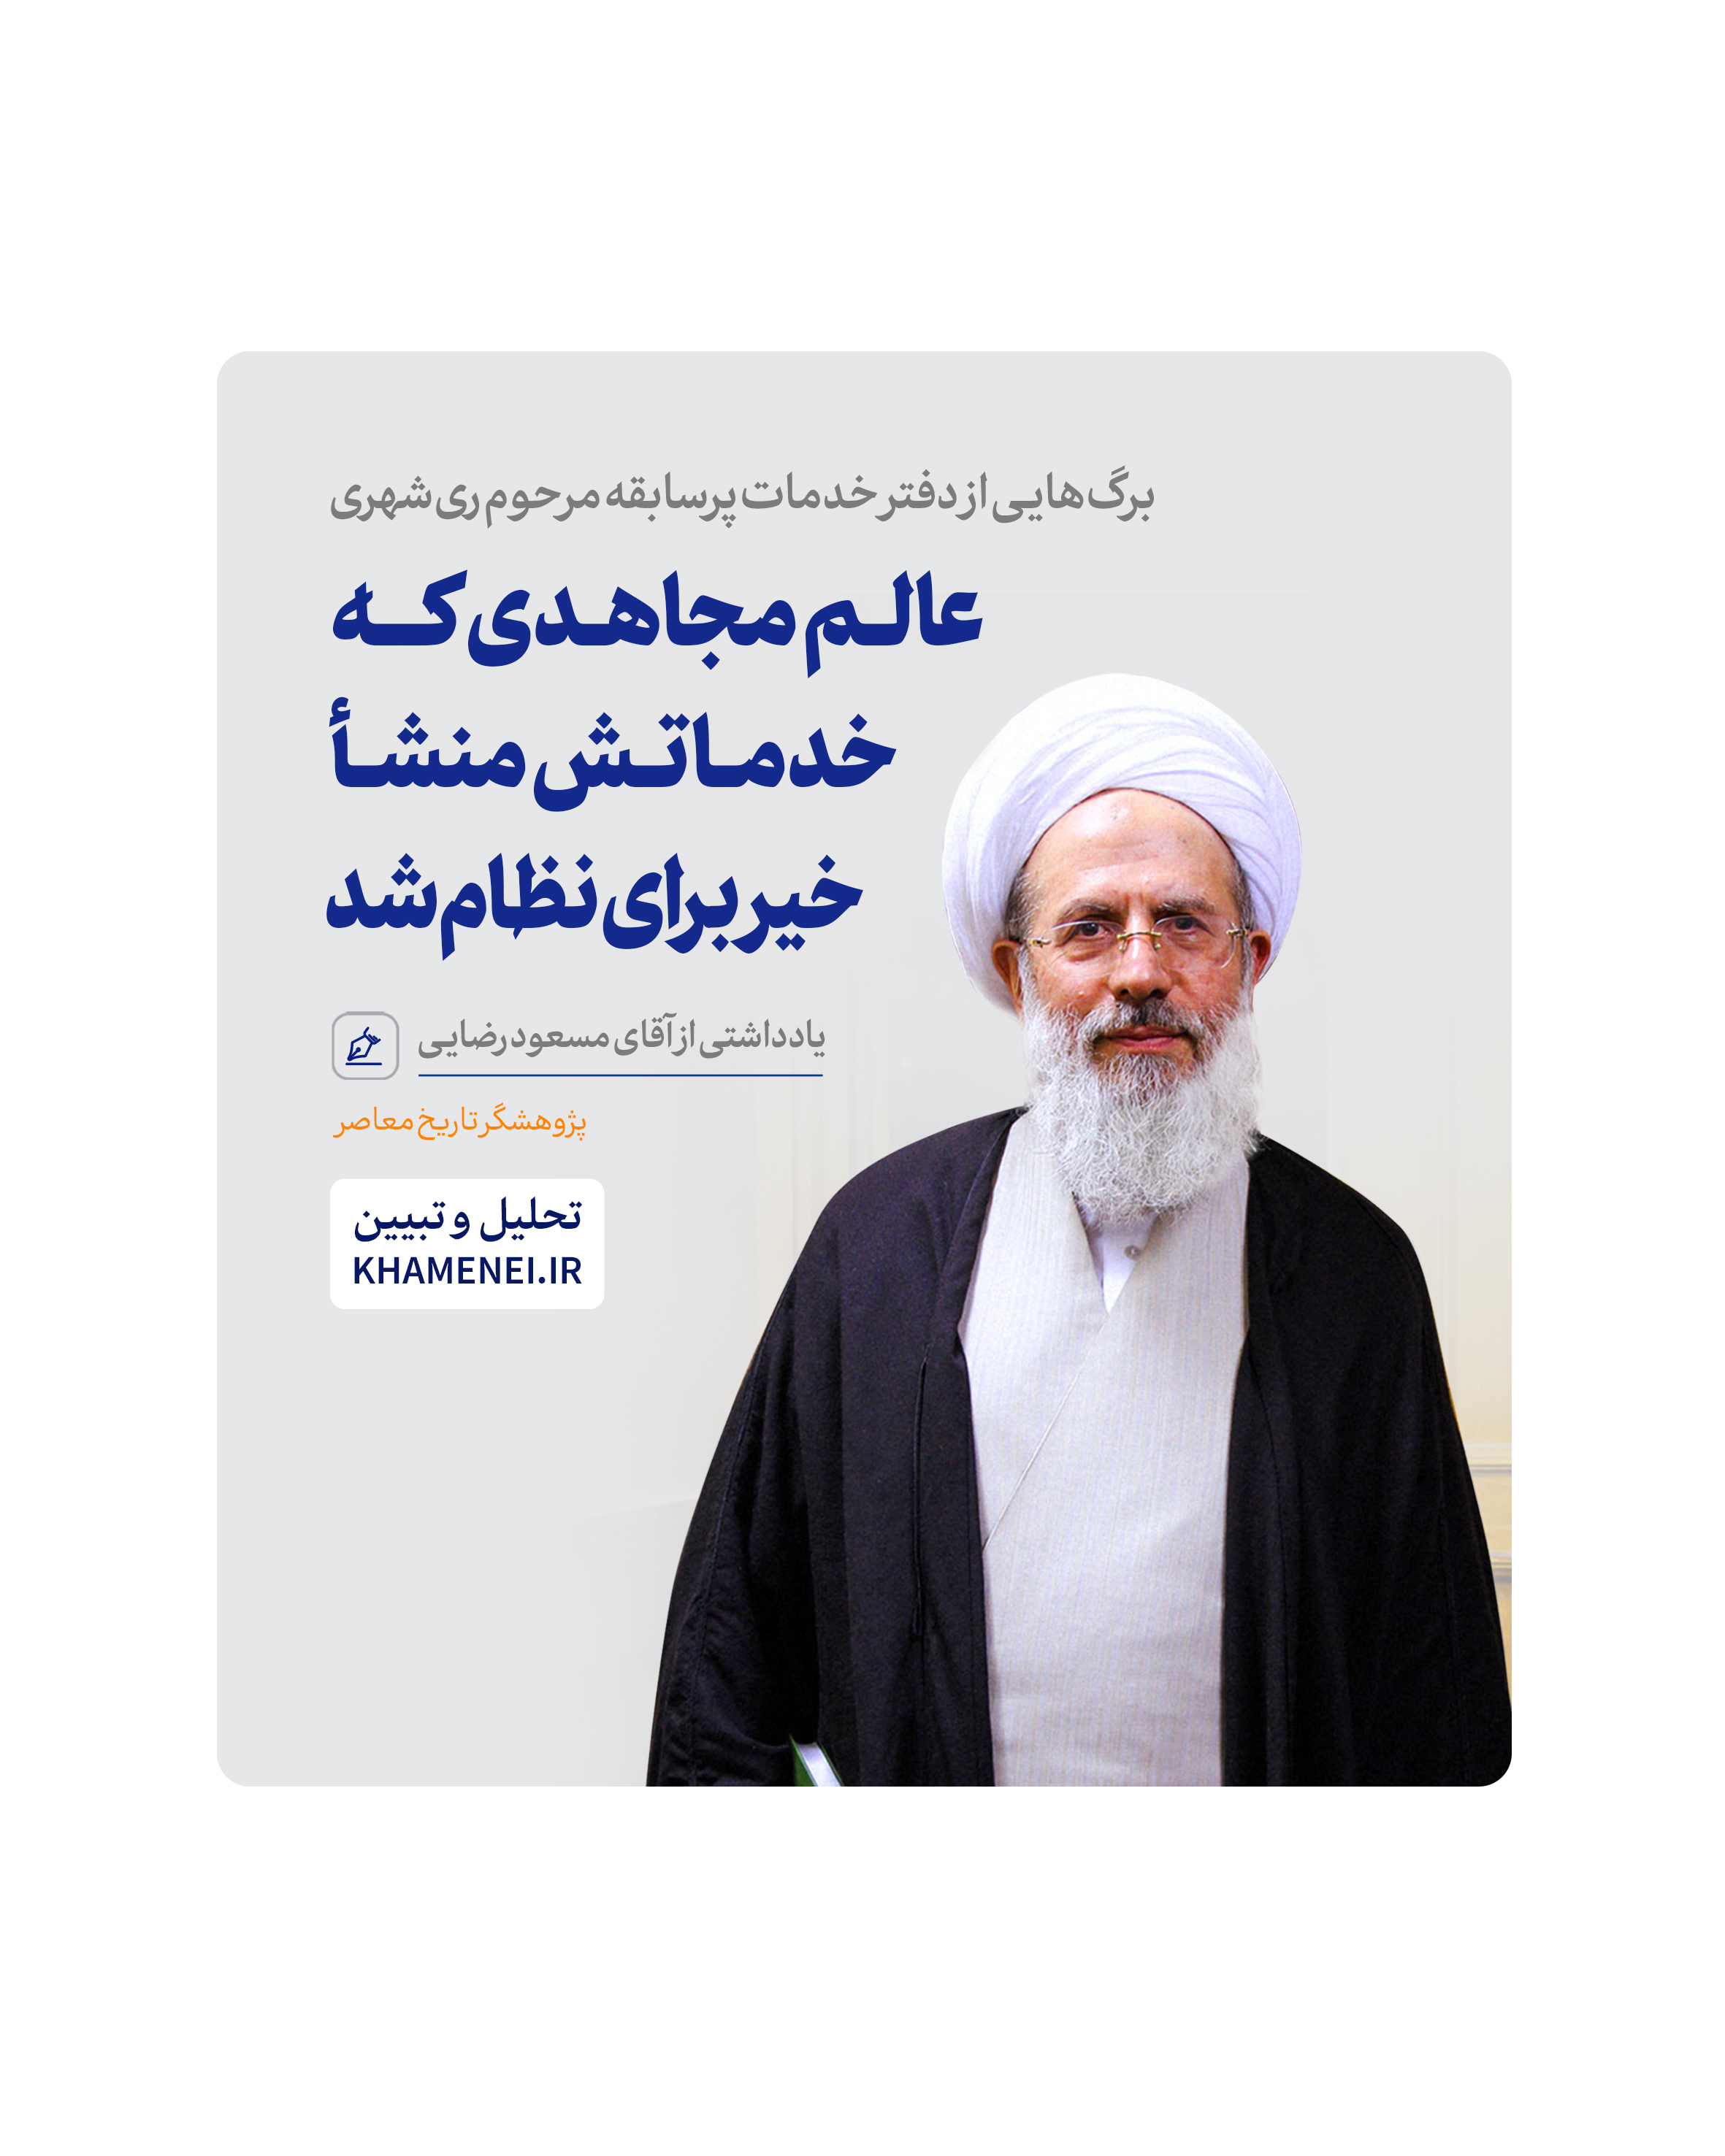 https://idc0-cdn0.khamenei.ir/ndata/news/49917/rezayi.jpg